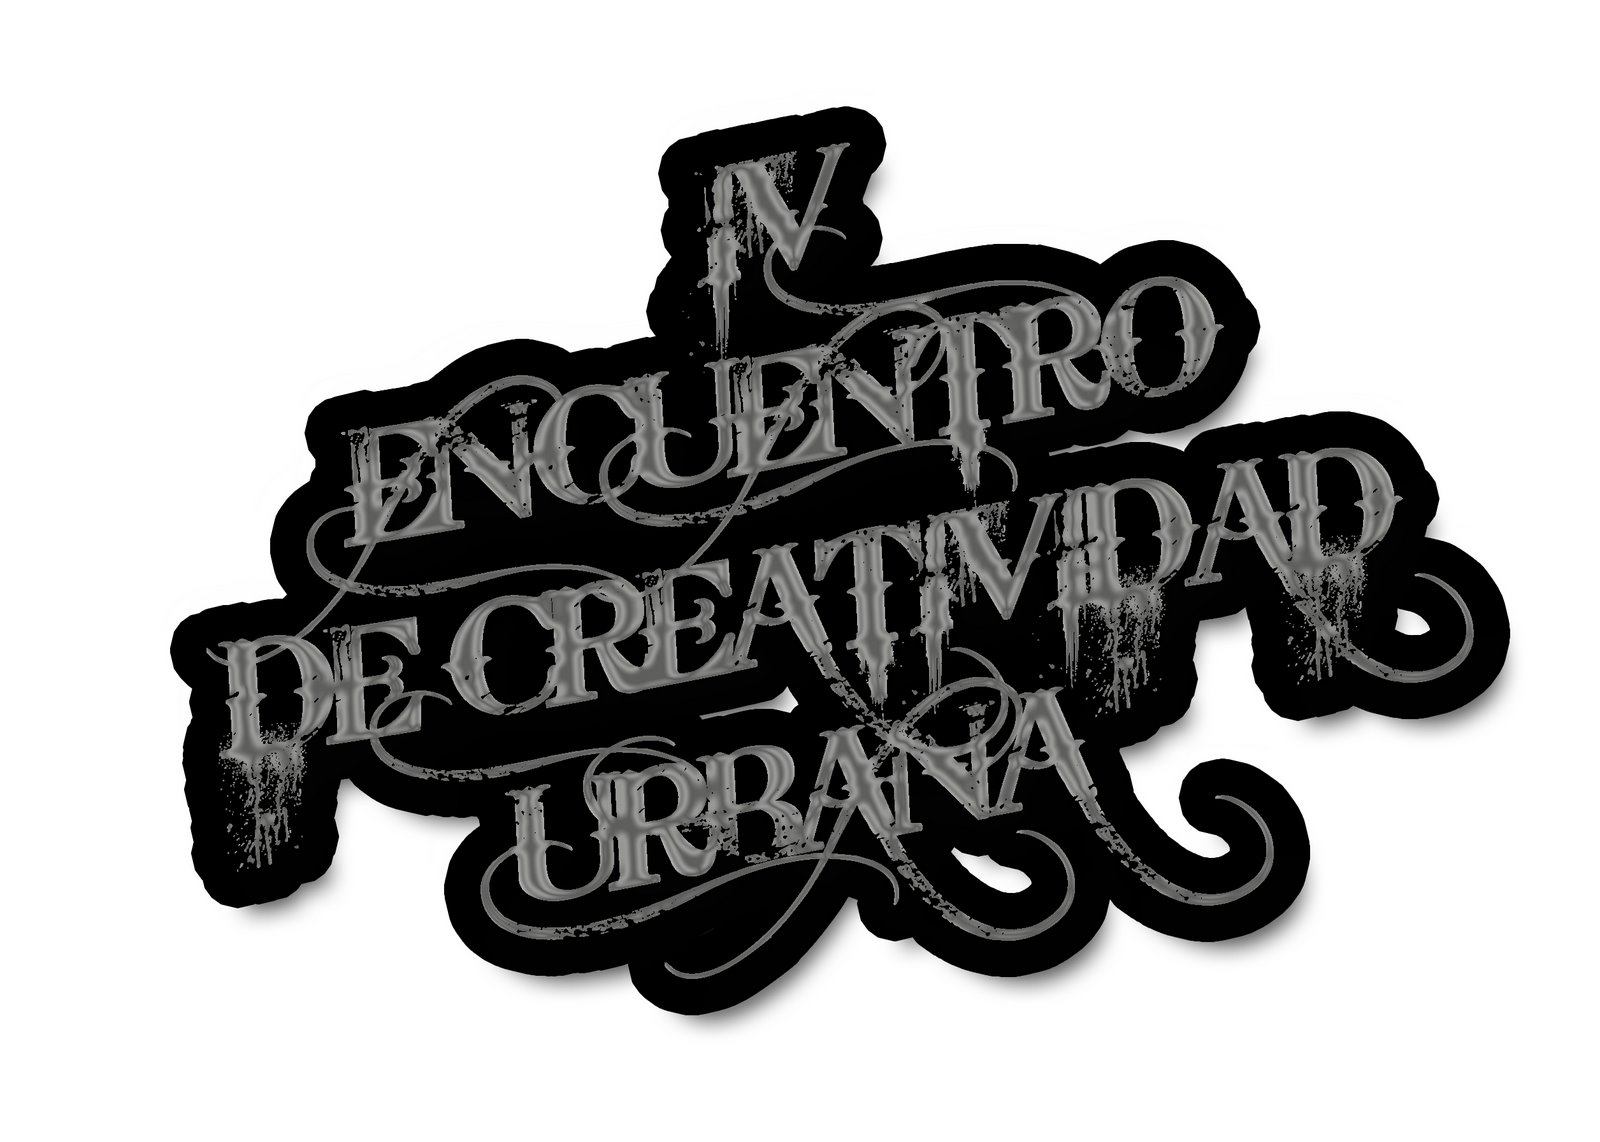 ENCUENTRO DE CREATIVIDAD URBANA